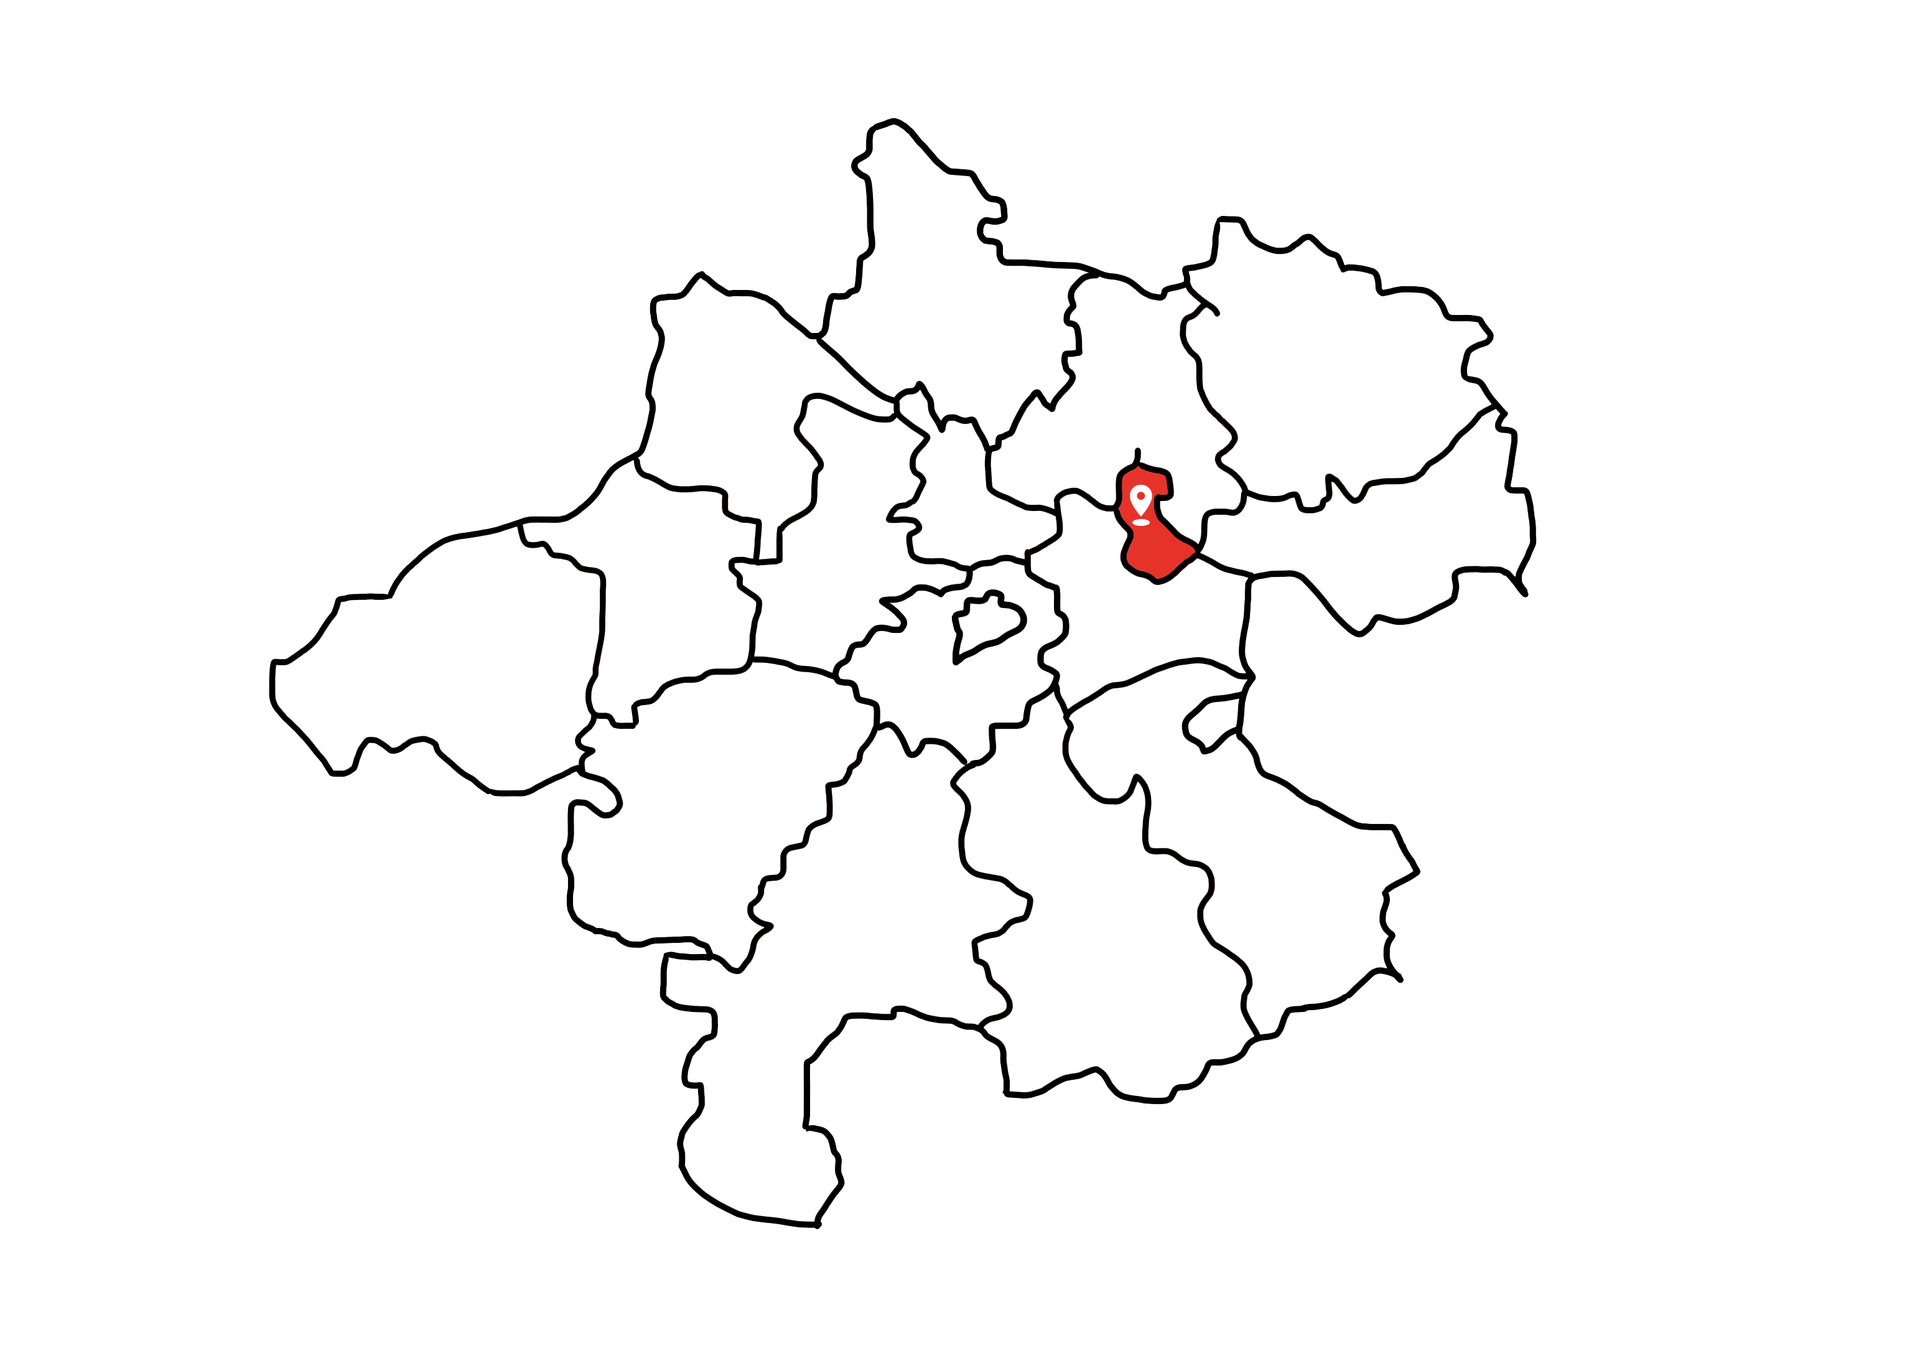 Eine Landkarte die Oberösterreich zeigt. Der Bezirk Linz ist rot markiert. Die restlichen Bezirke sind weiß.